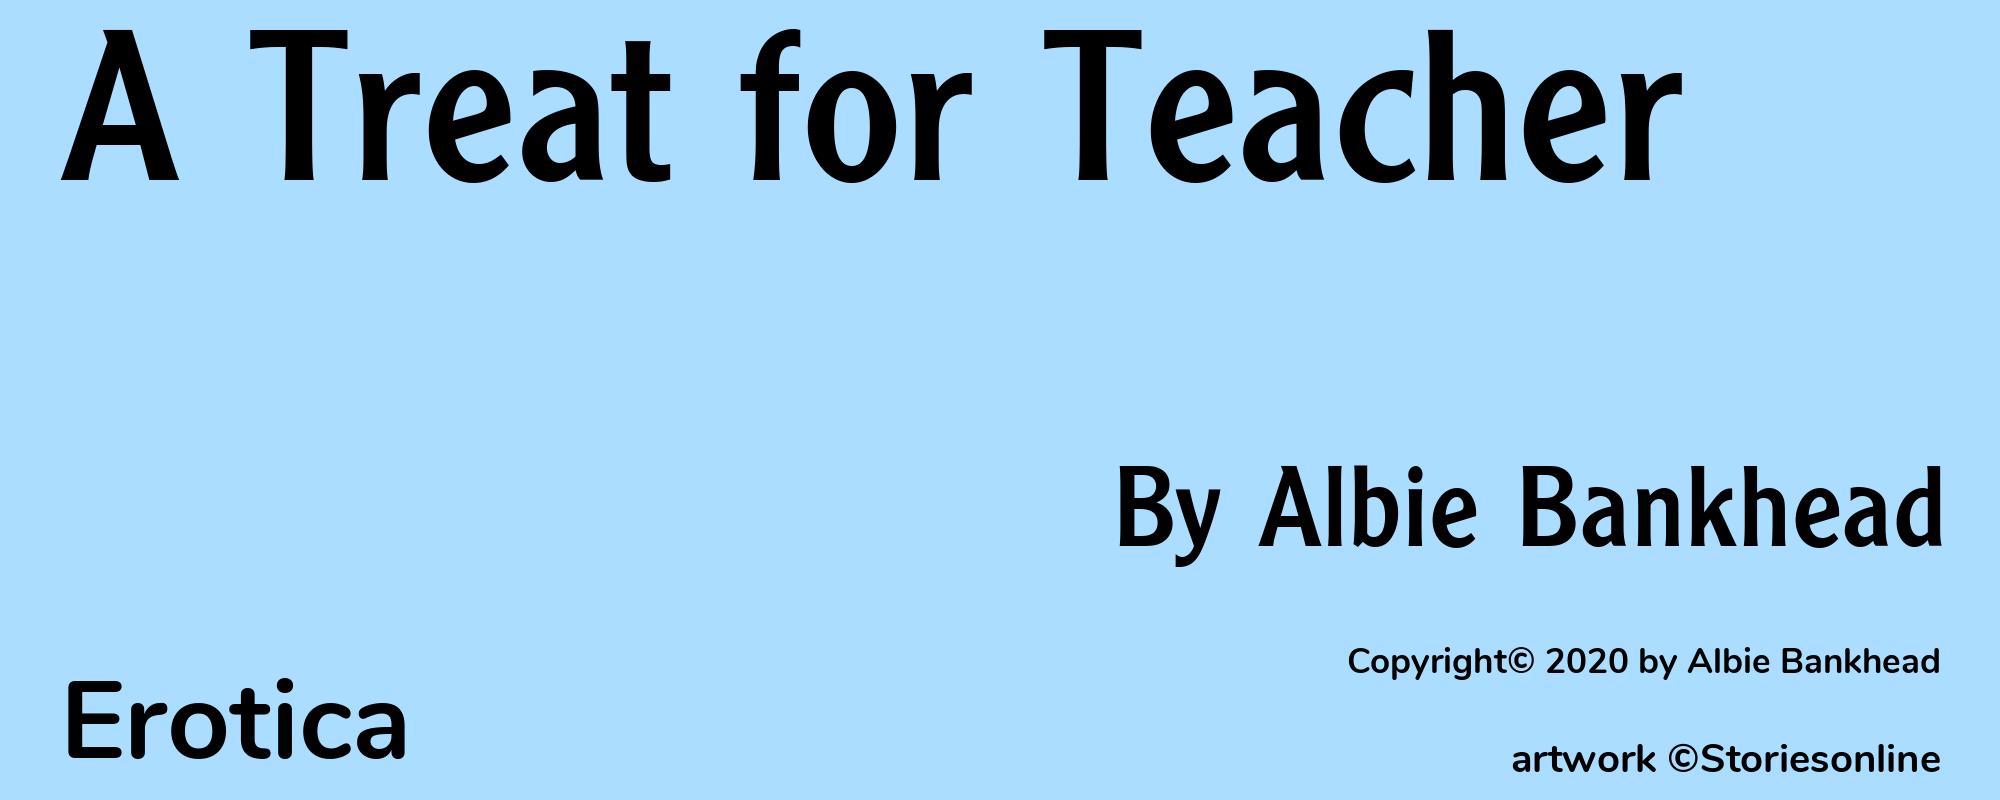 A Treat for Teacher - Cover